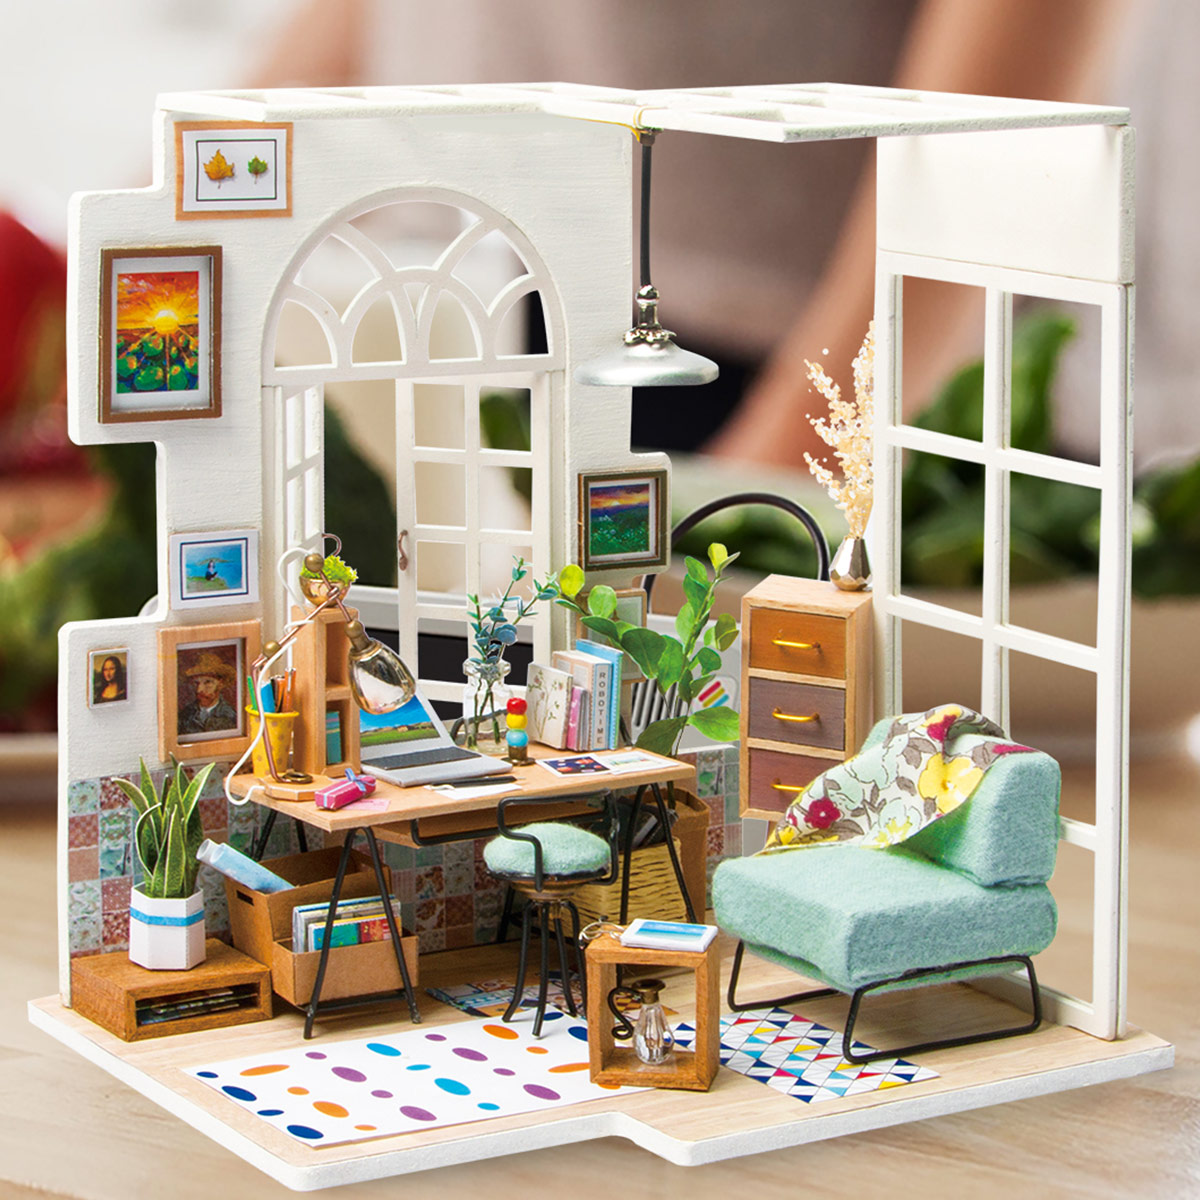 Rolife Miniature DGM01 SOHO Time as a home decor